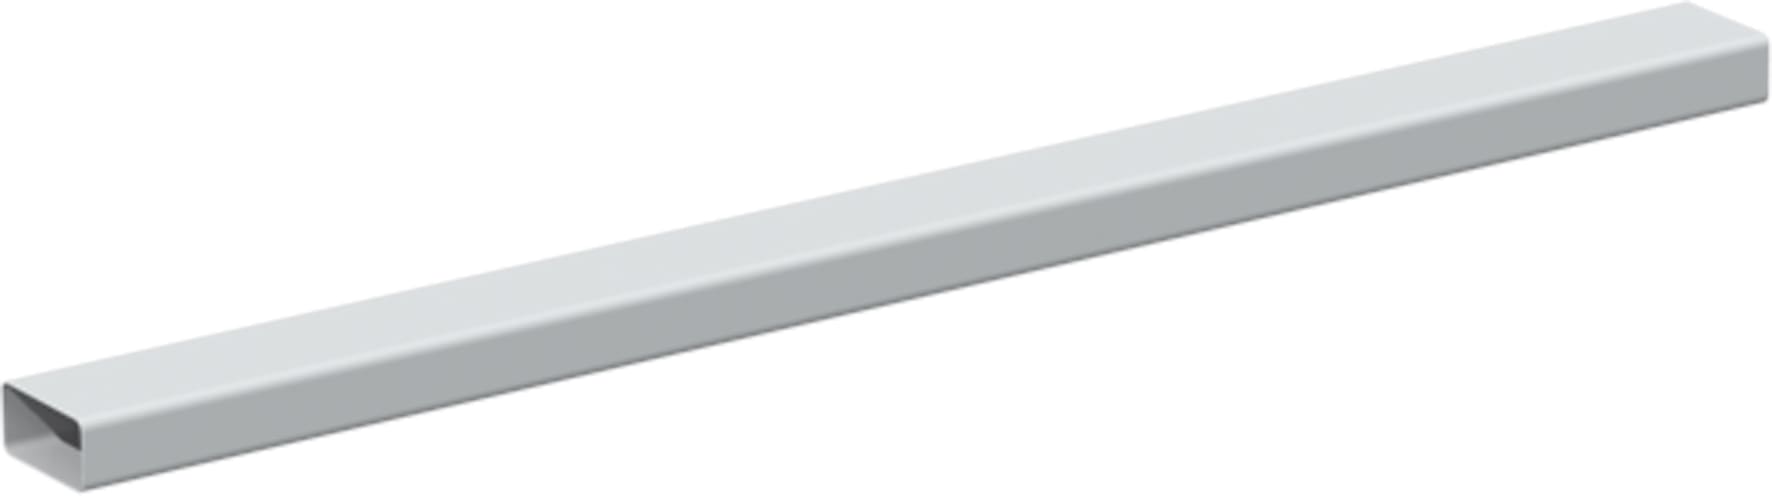 S&P - Conduit rectangulaire PVC rigide 55 x 110 mm, longueur 3 m, gamme TUBPLA